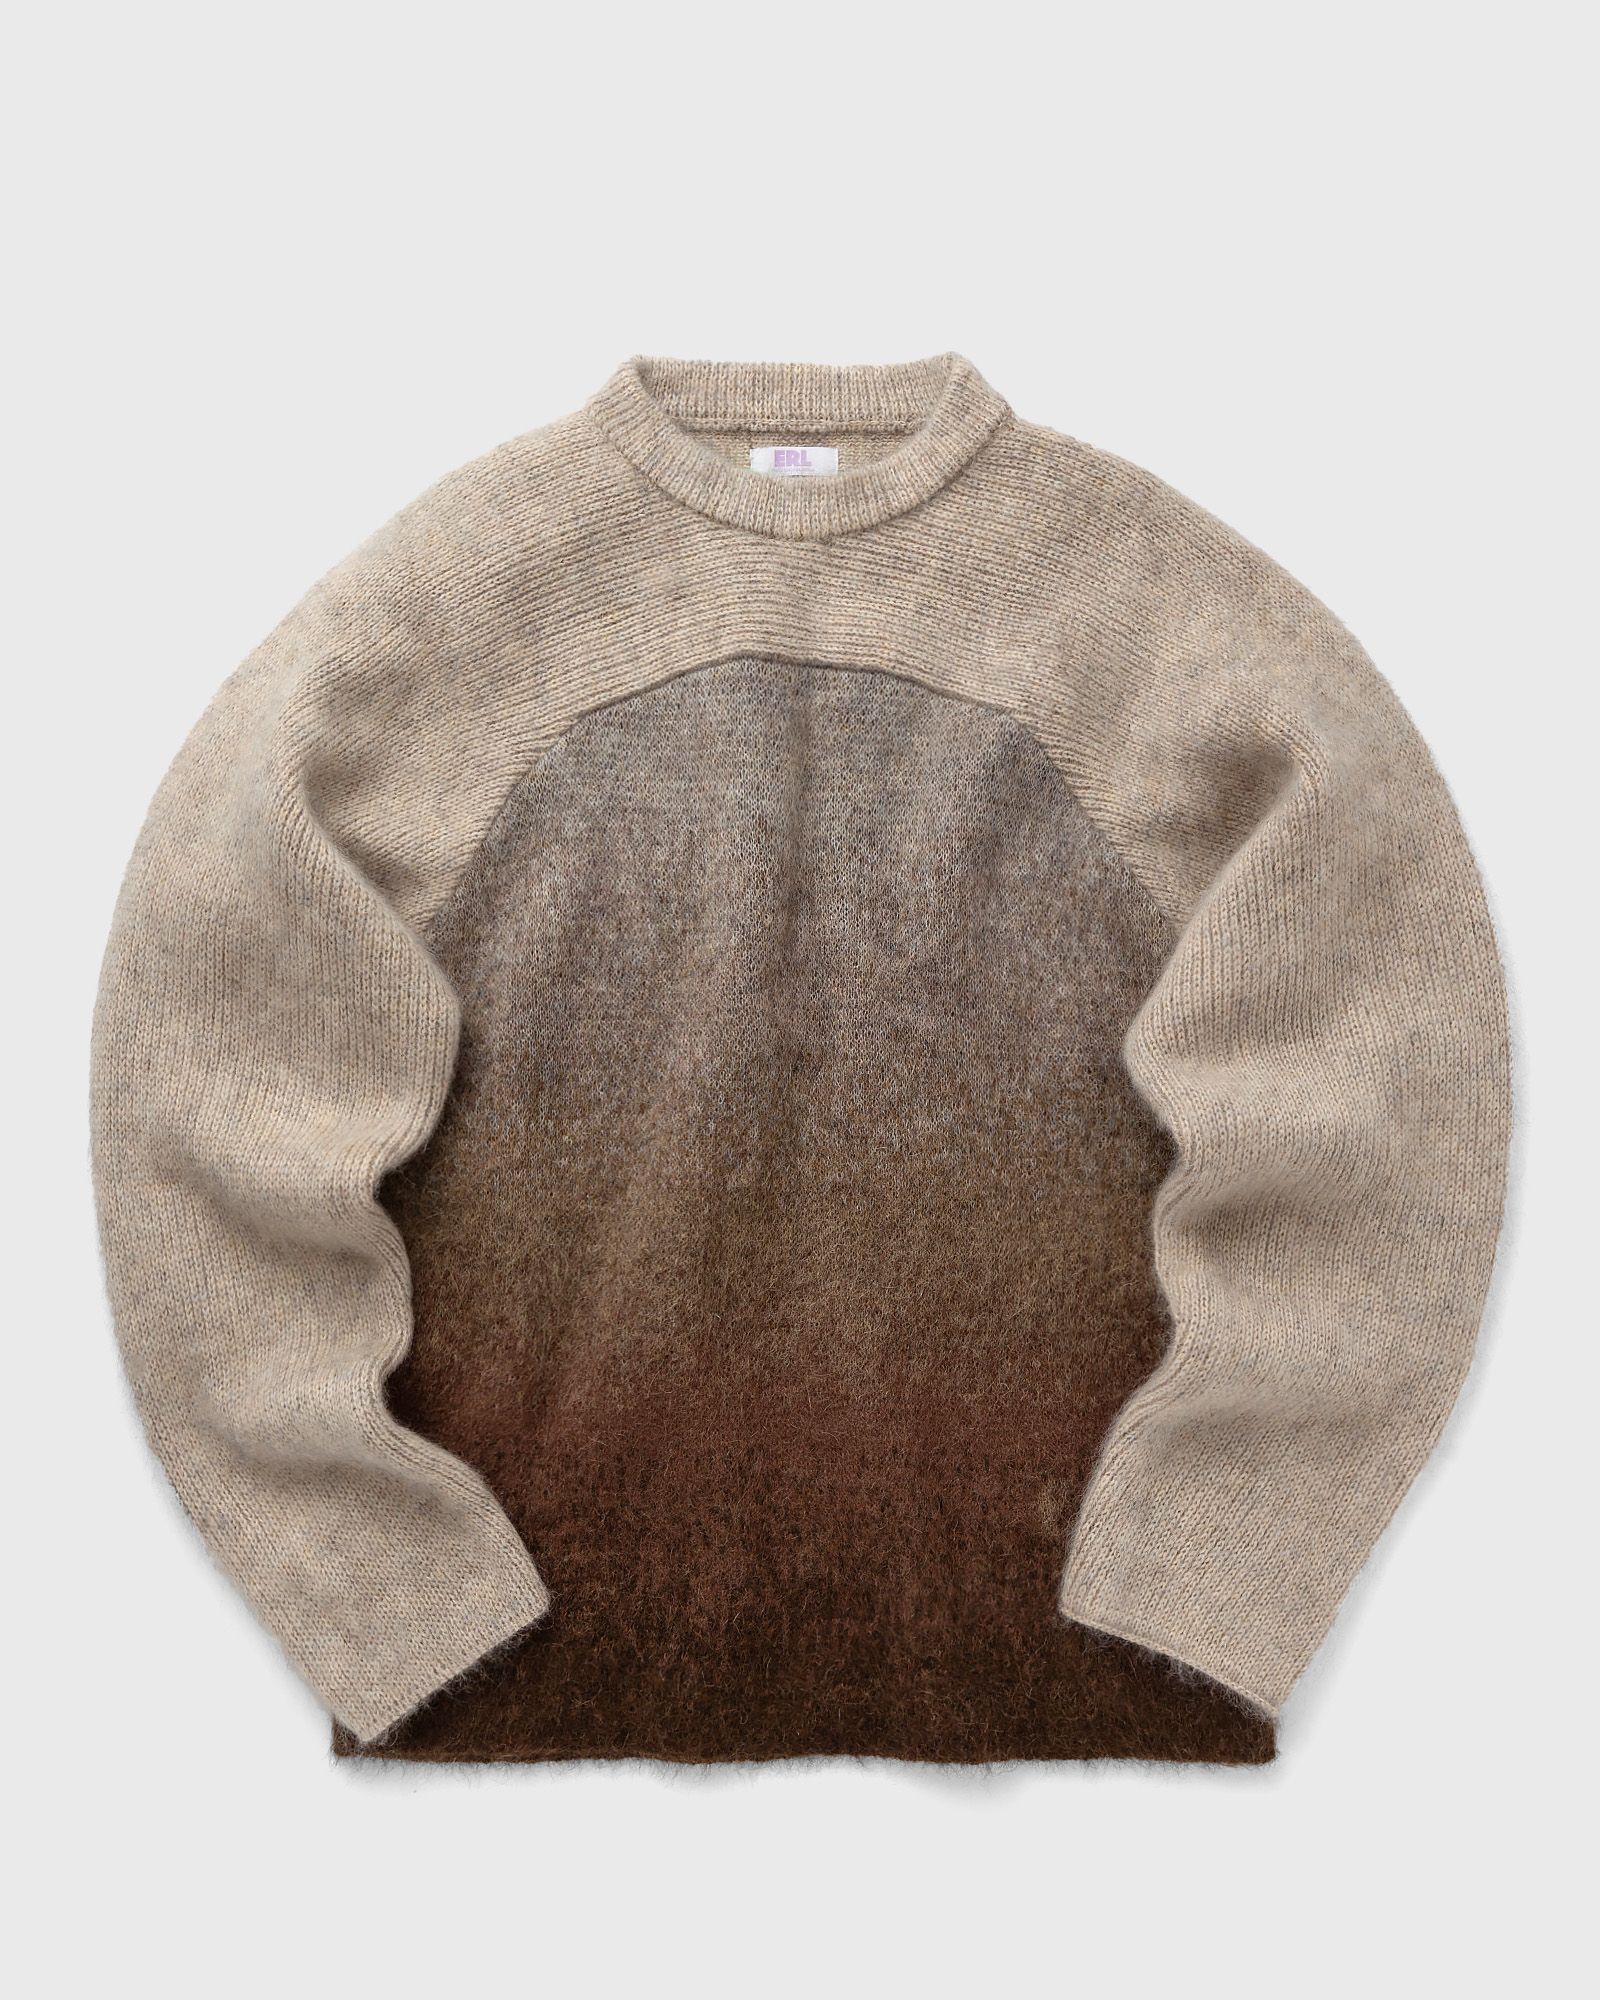 ERL - gradient rainbow sweater knit men pullovers brown|beige in größe:l